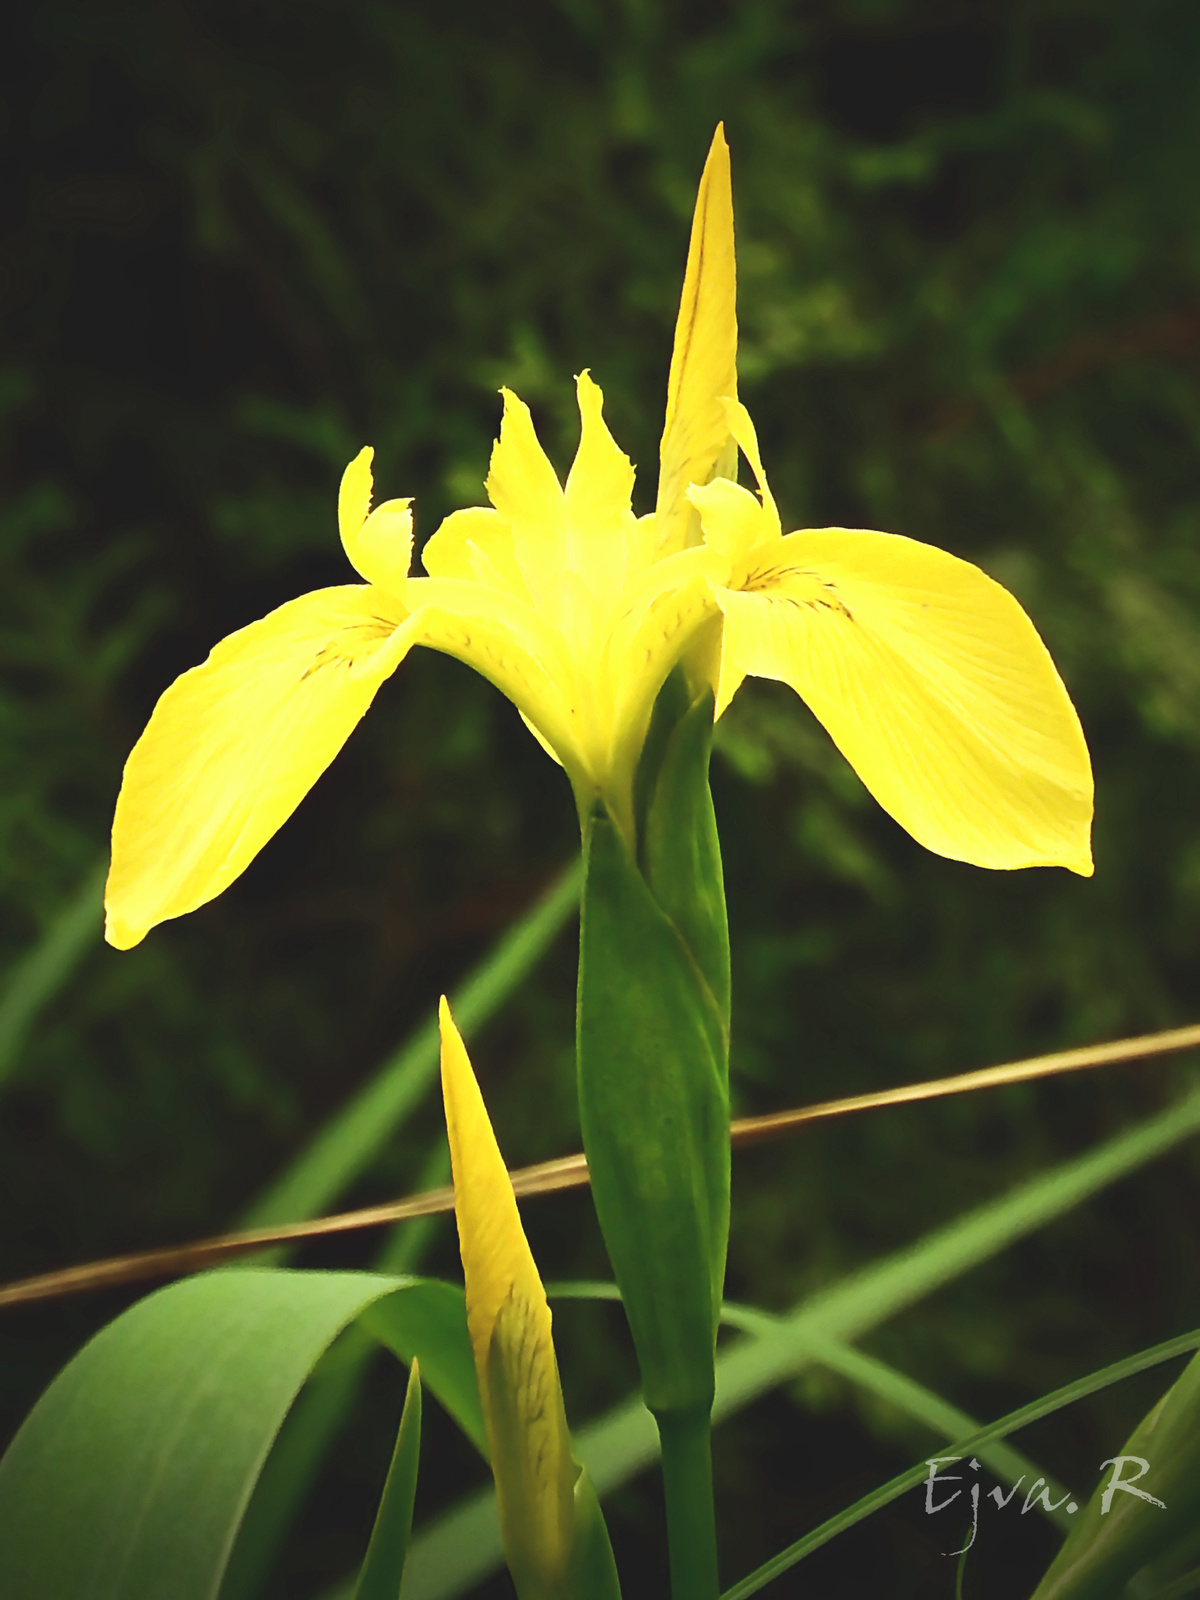 Mocsári nőszirom (Iris pseudacorus)